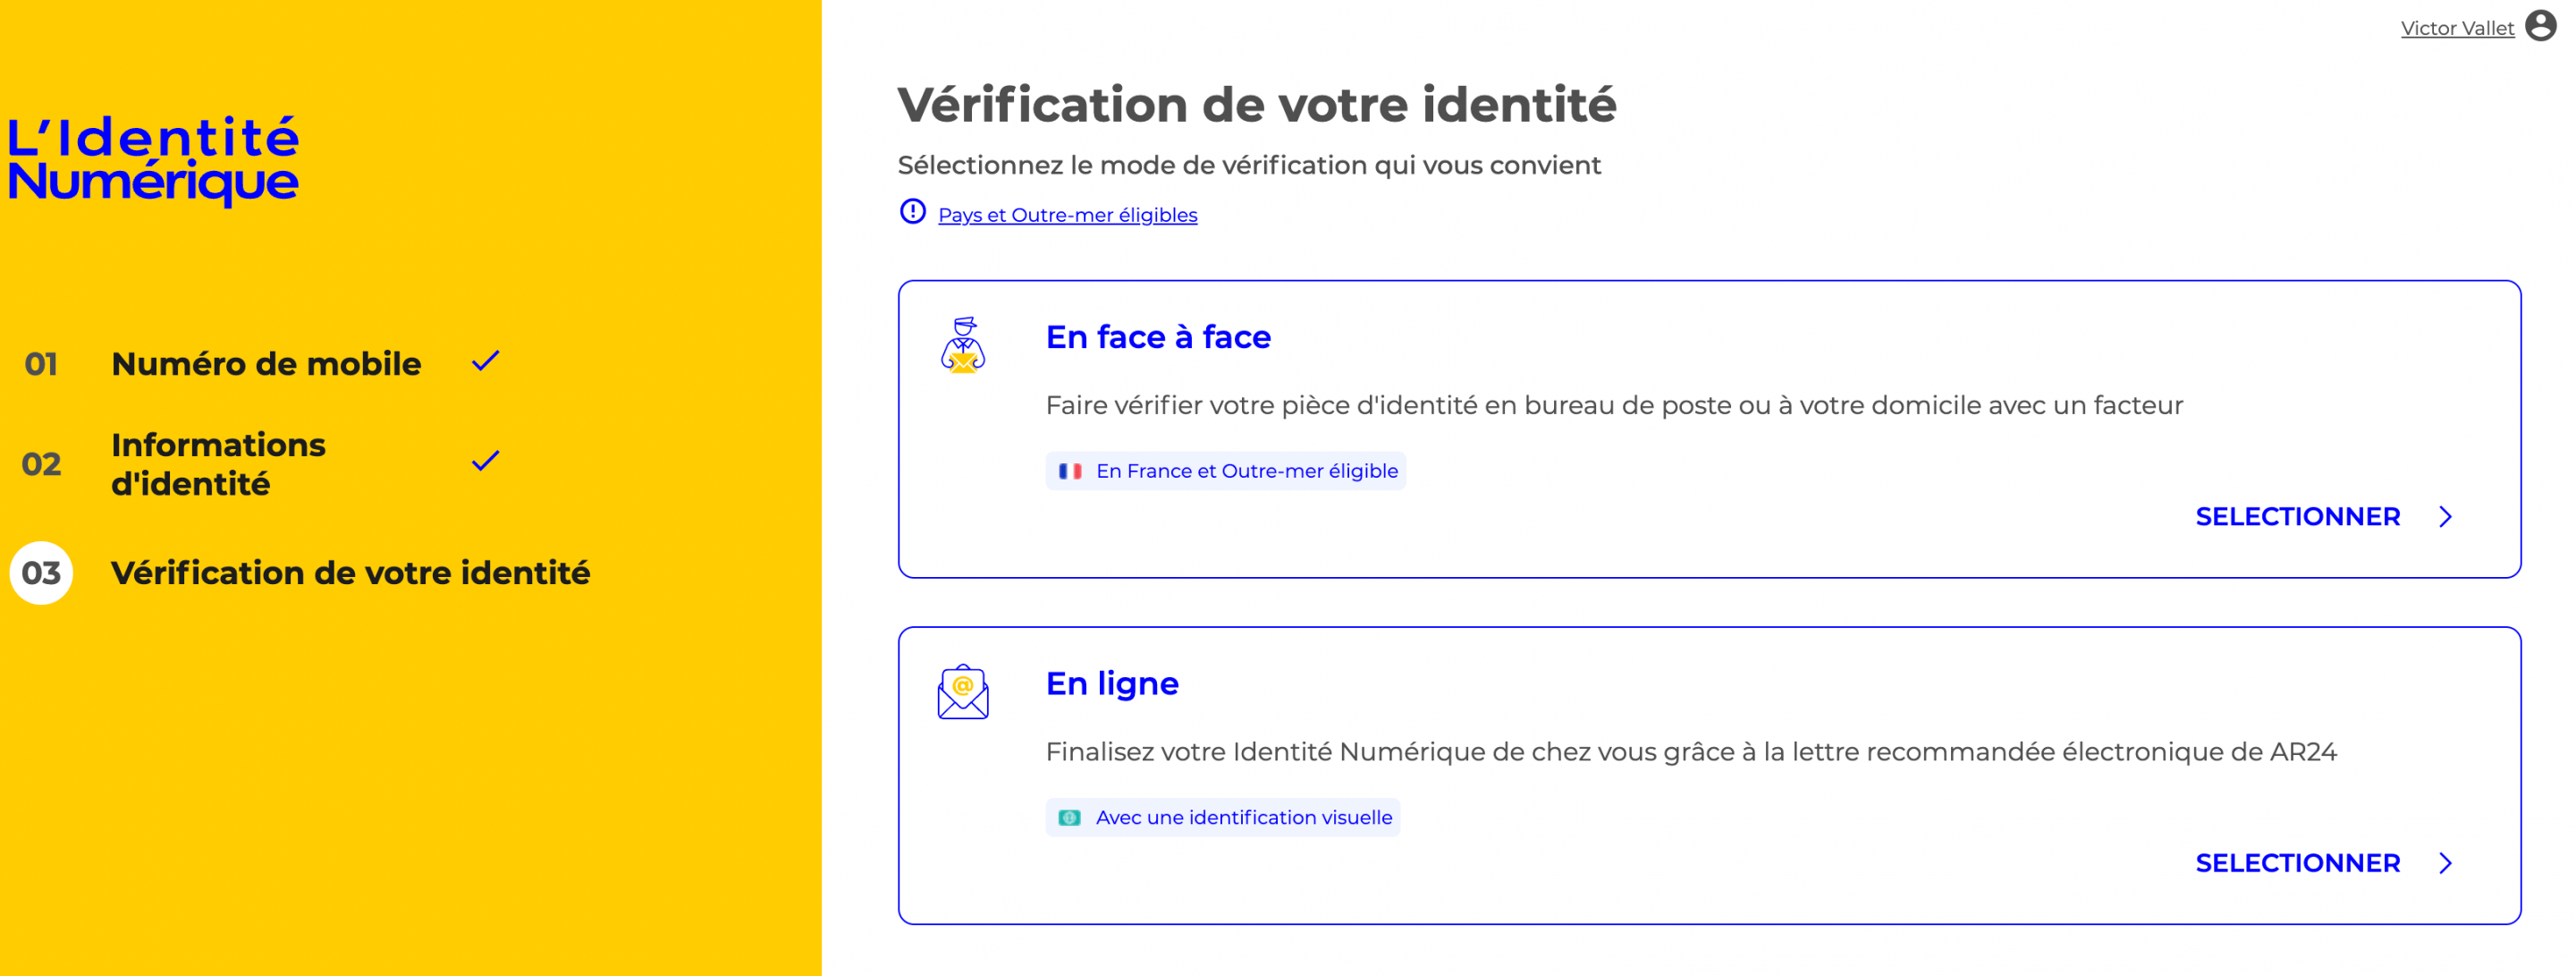 L'Identité Numérique La Poste – sécurisez votre identité en ligne